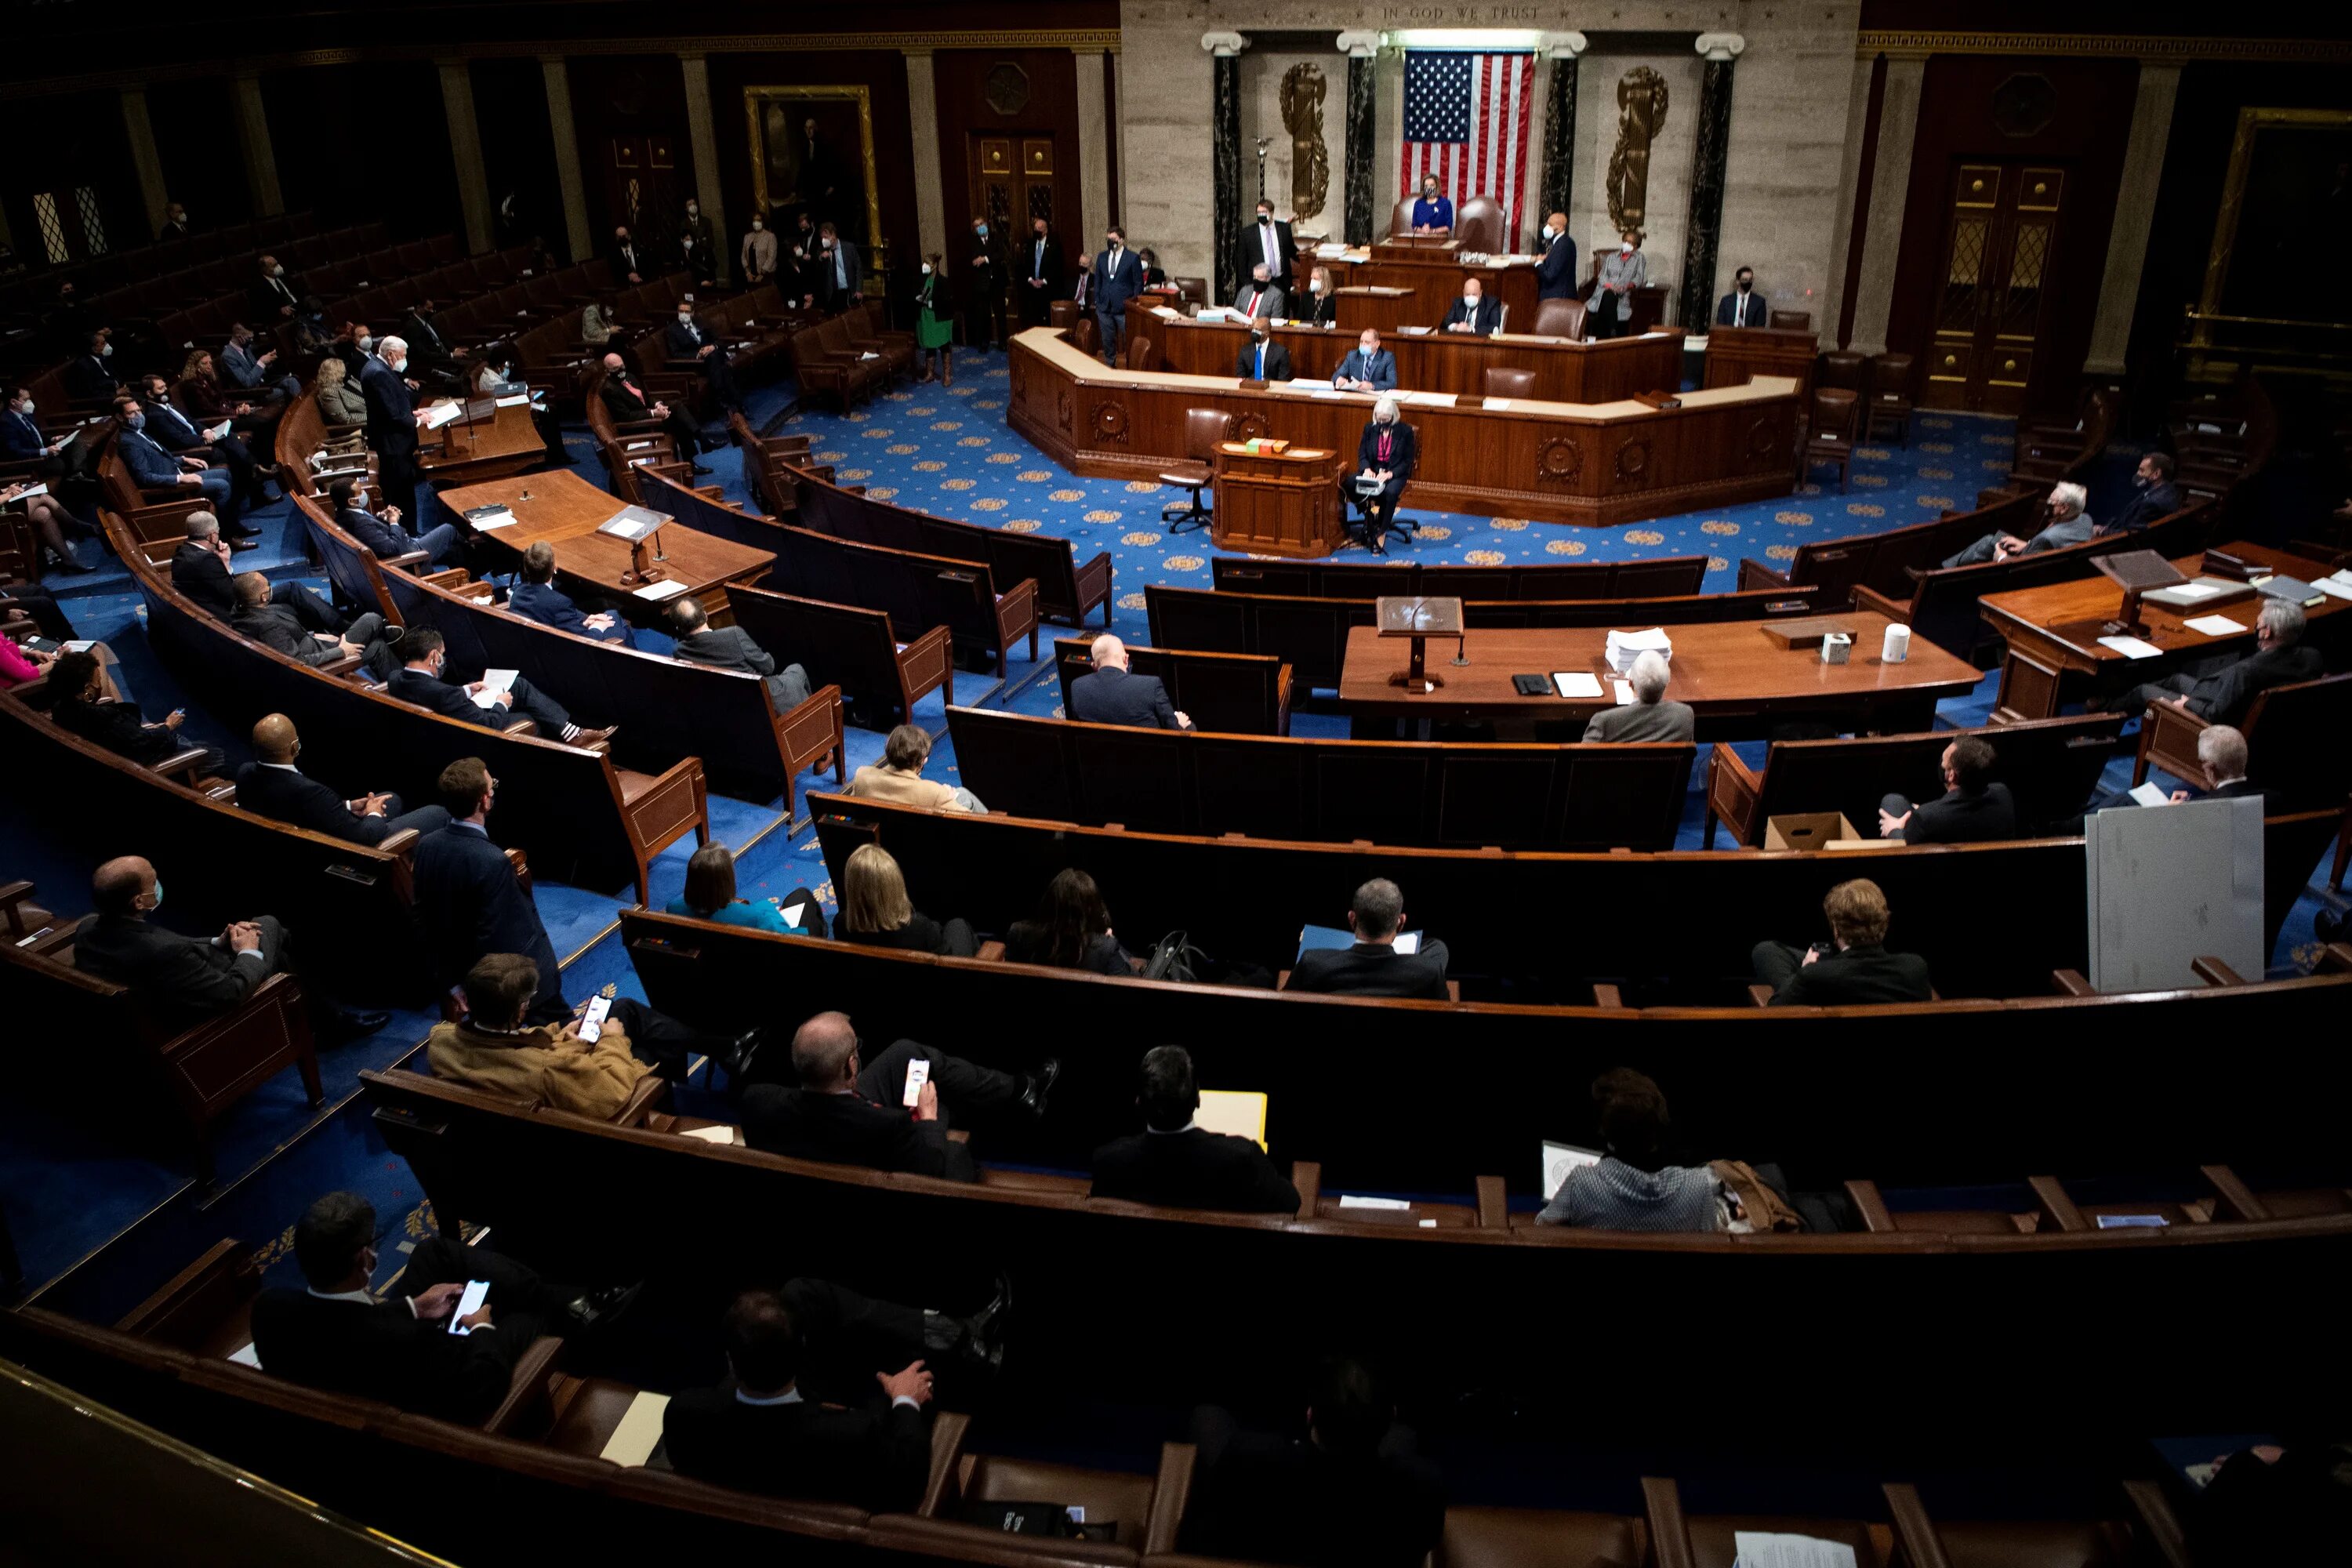 Сенат конгресса США. Конгресс США Сенат и палата представителей. Заседание Сената США.